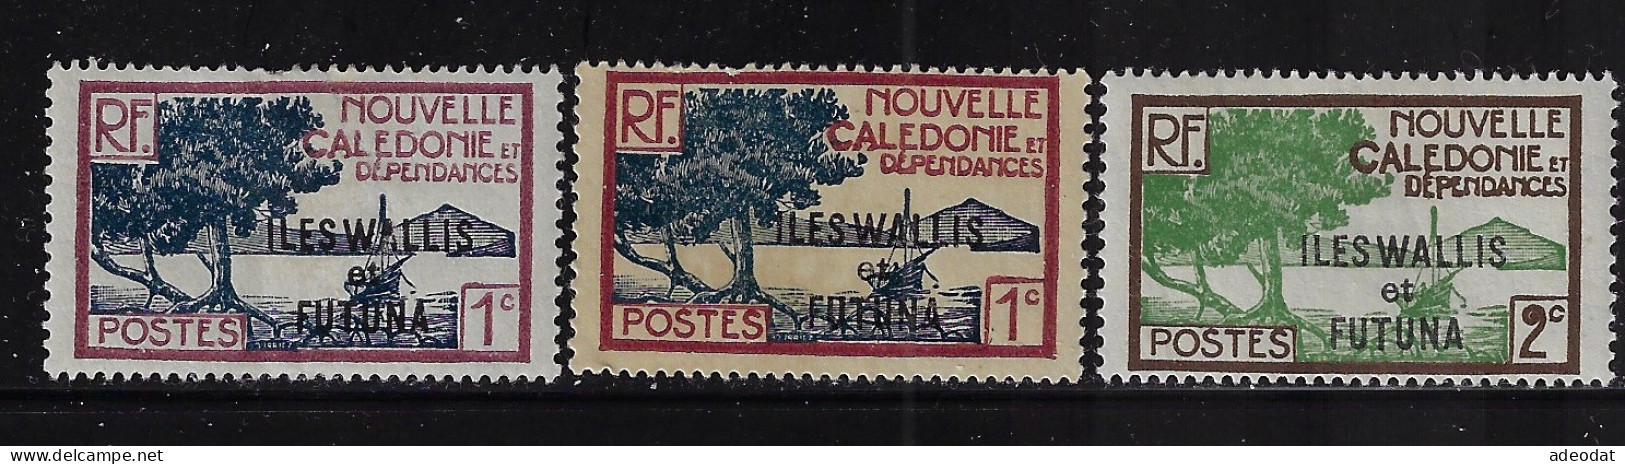 WALLIS & FUTUNA  1930  SCOTT # 43(2),44  MNH - Nuevos